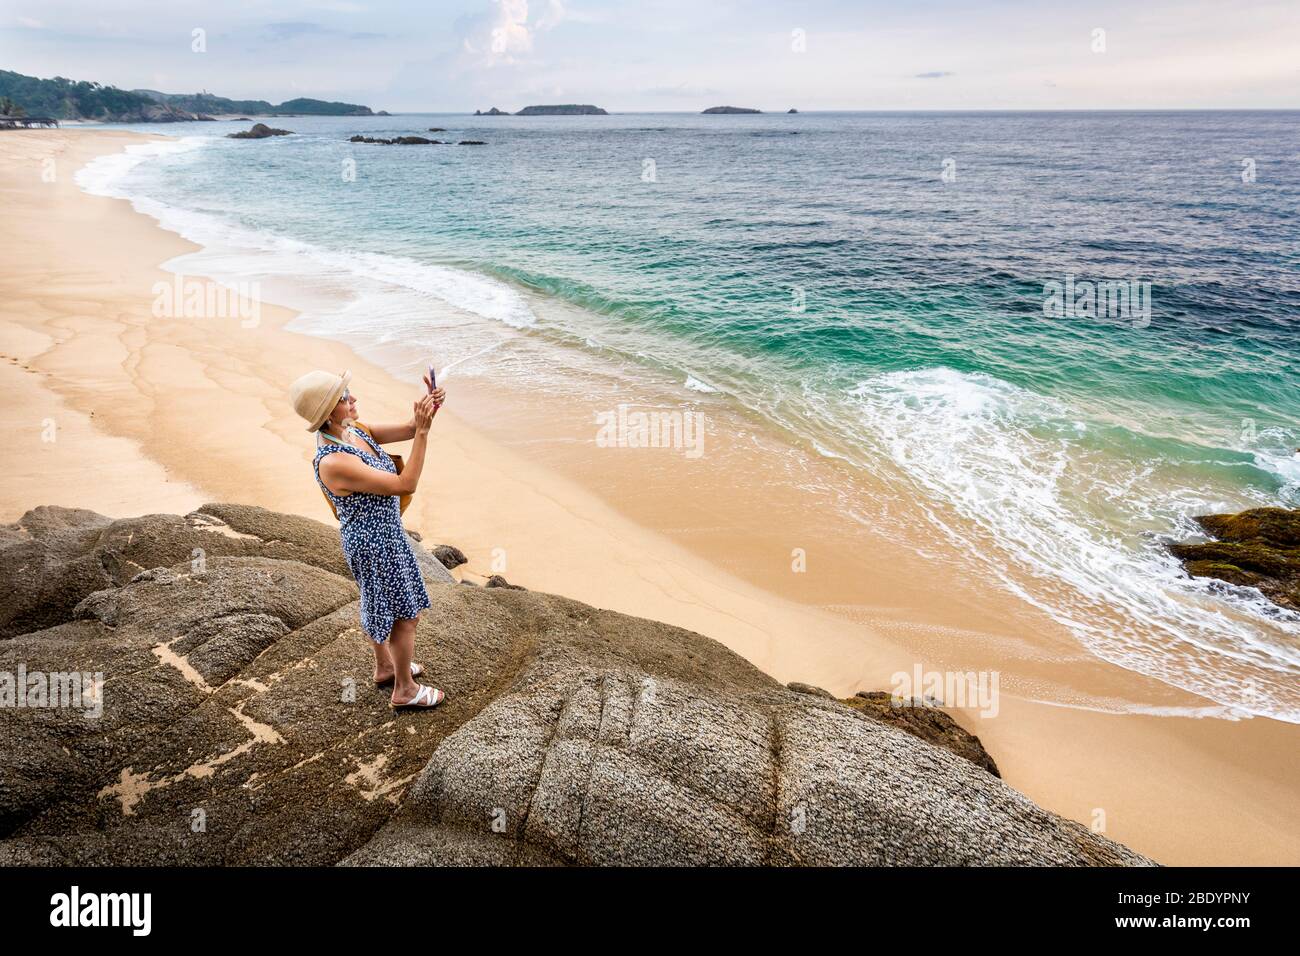 Una donna fotografa la spiaggia di Palma sola sulla costa pacifica del Messico. Foto Stock